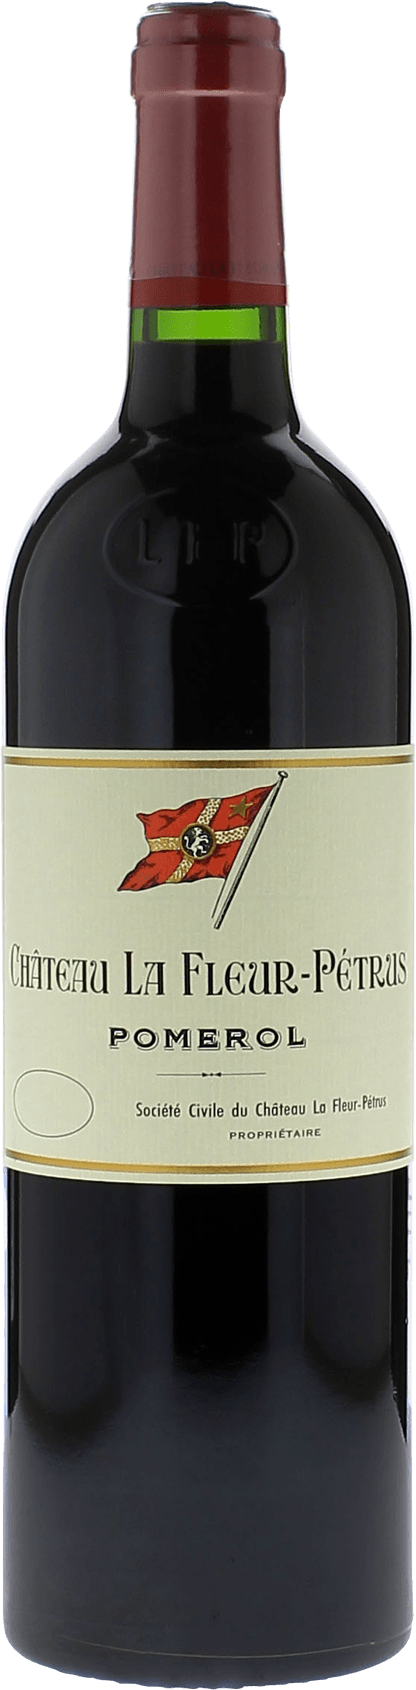 La fleur petrus 2015  Pomerol, Bordeaux rouge